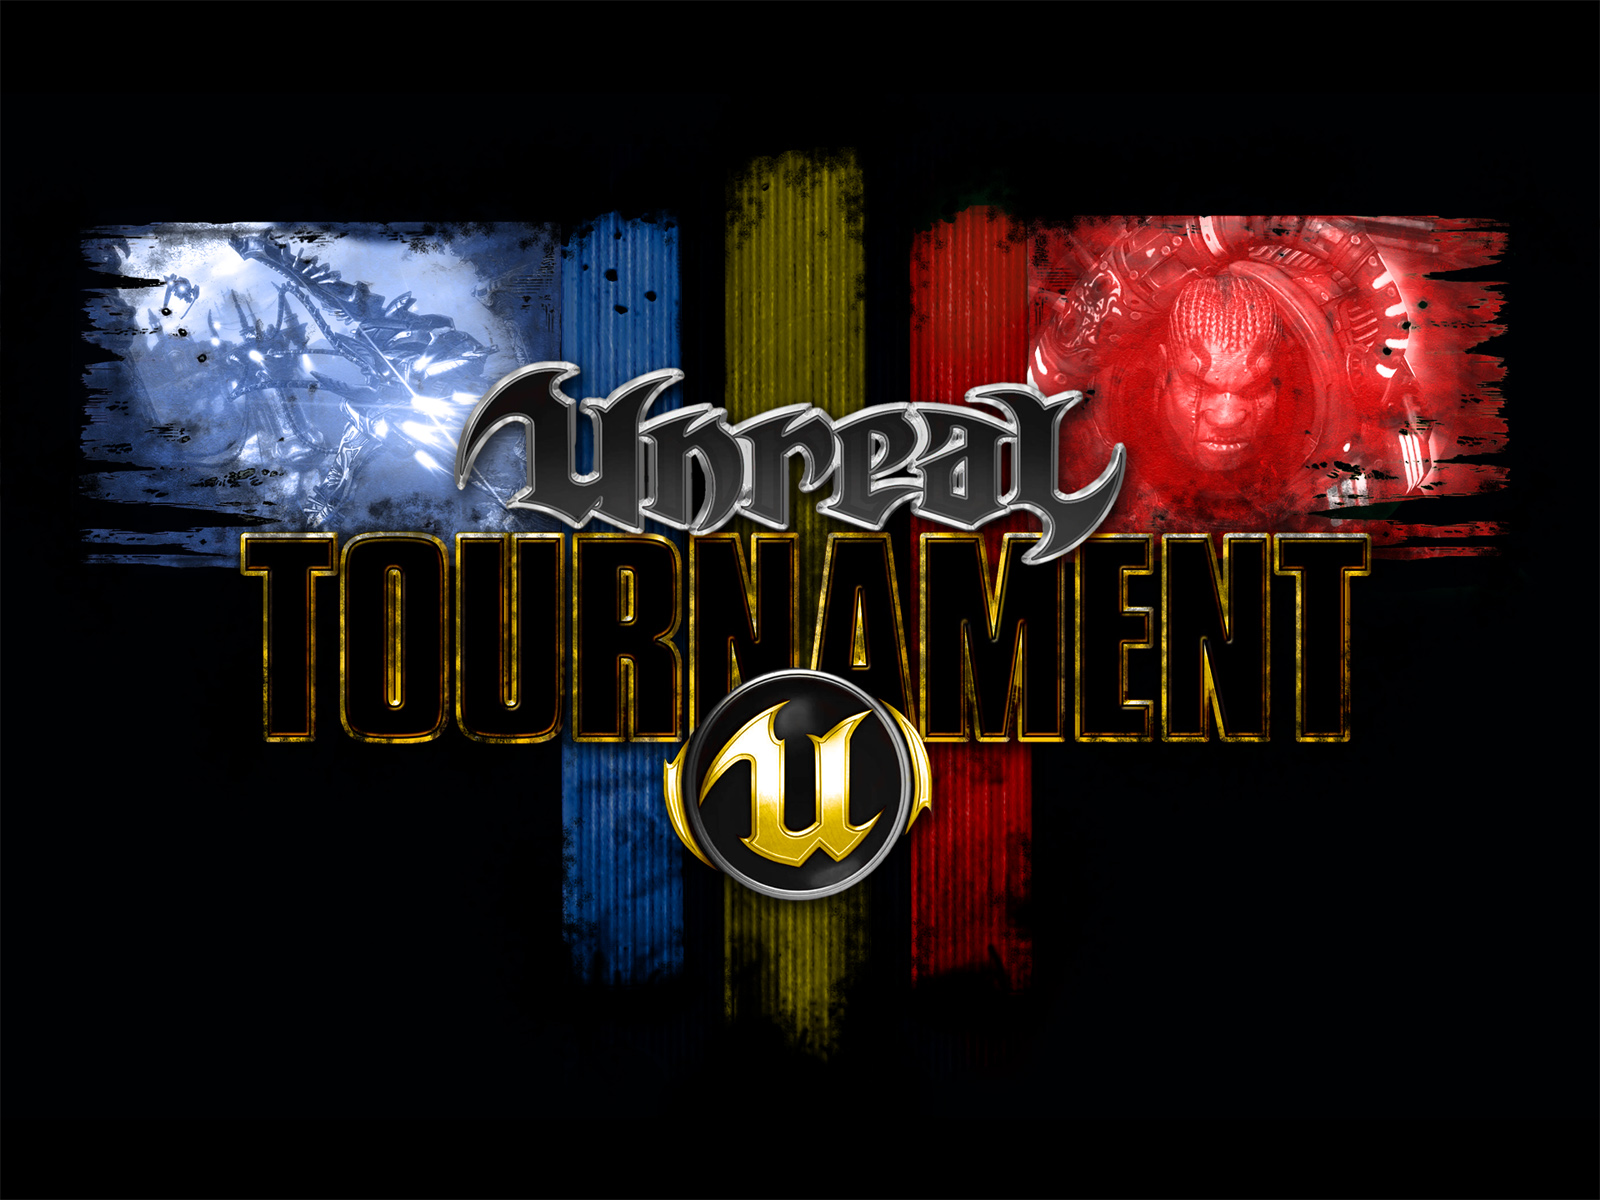 Unreal Tournament Wallpaper Hd - Unreal Tournament 3 Soundtrack , HD Wallpaper & Backgrounds